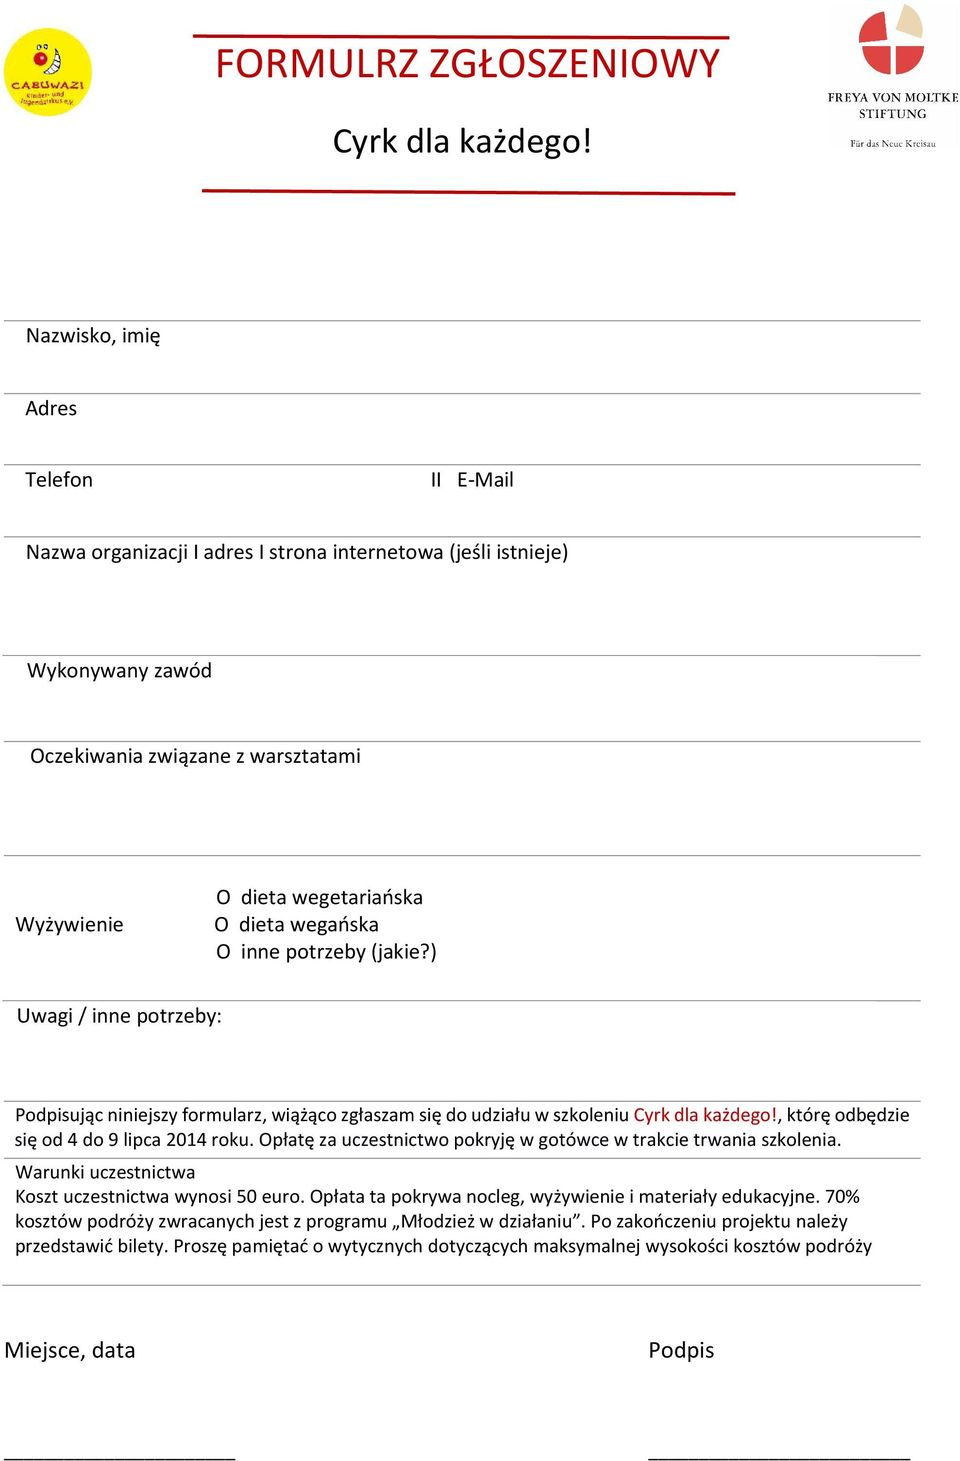 wegańska O inne potrzeby (jakie?) Uwagi / inne potrzeby: Podpisując niniejszy formularz, wiążąco zgłaszam się do udziału w szkoleniu Cyrk dla każdego!, którę odbędzie się od 4 do 9 lipca 2014 roku.